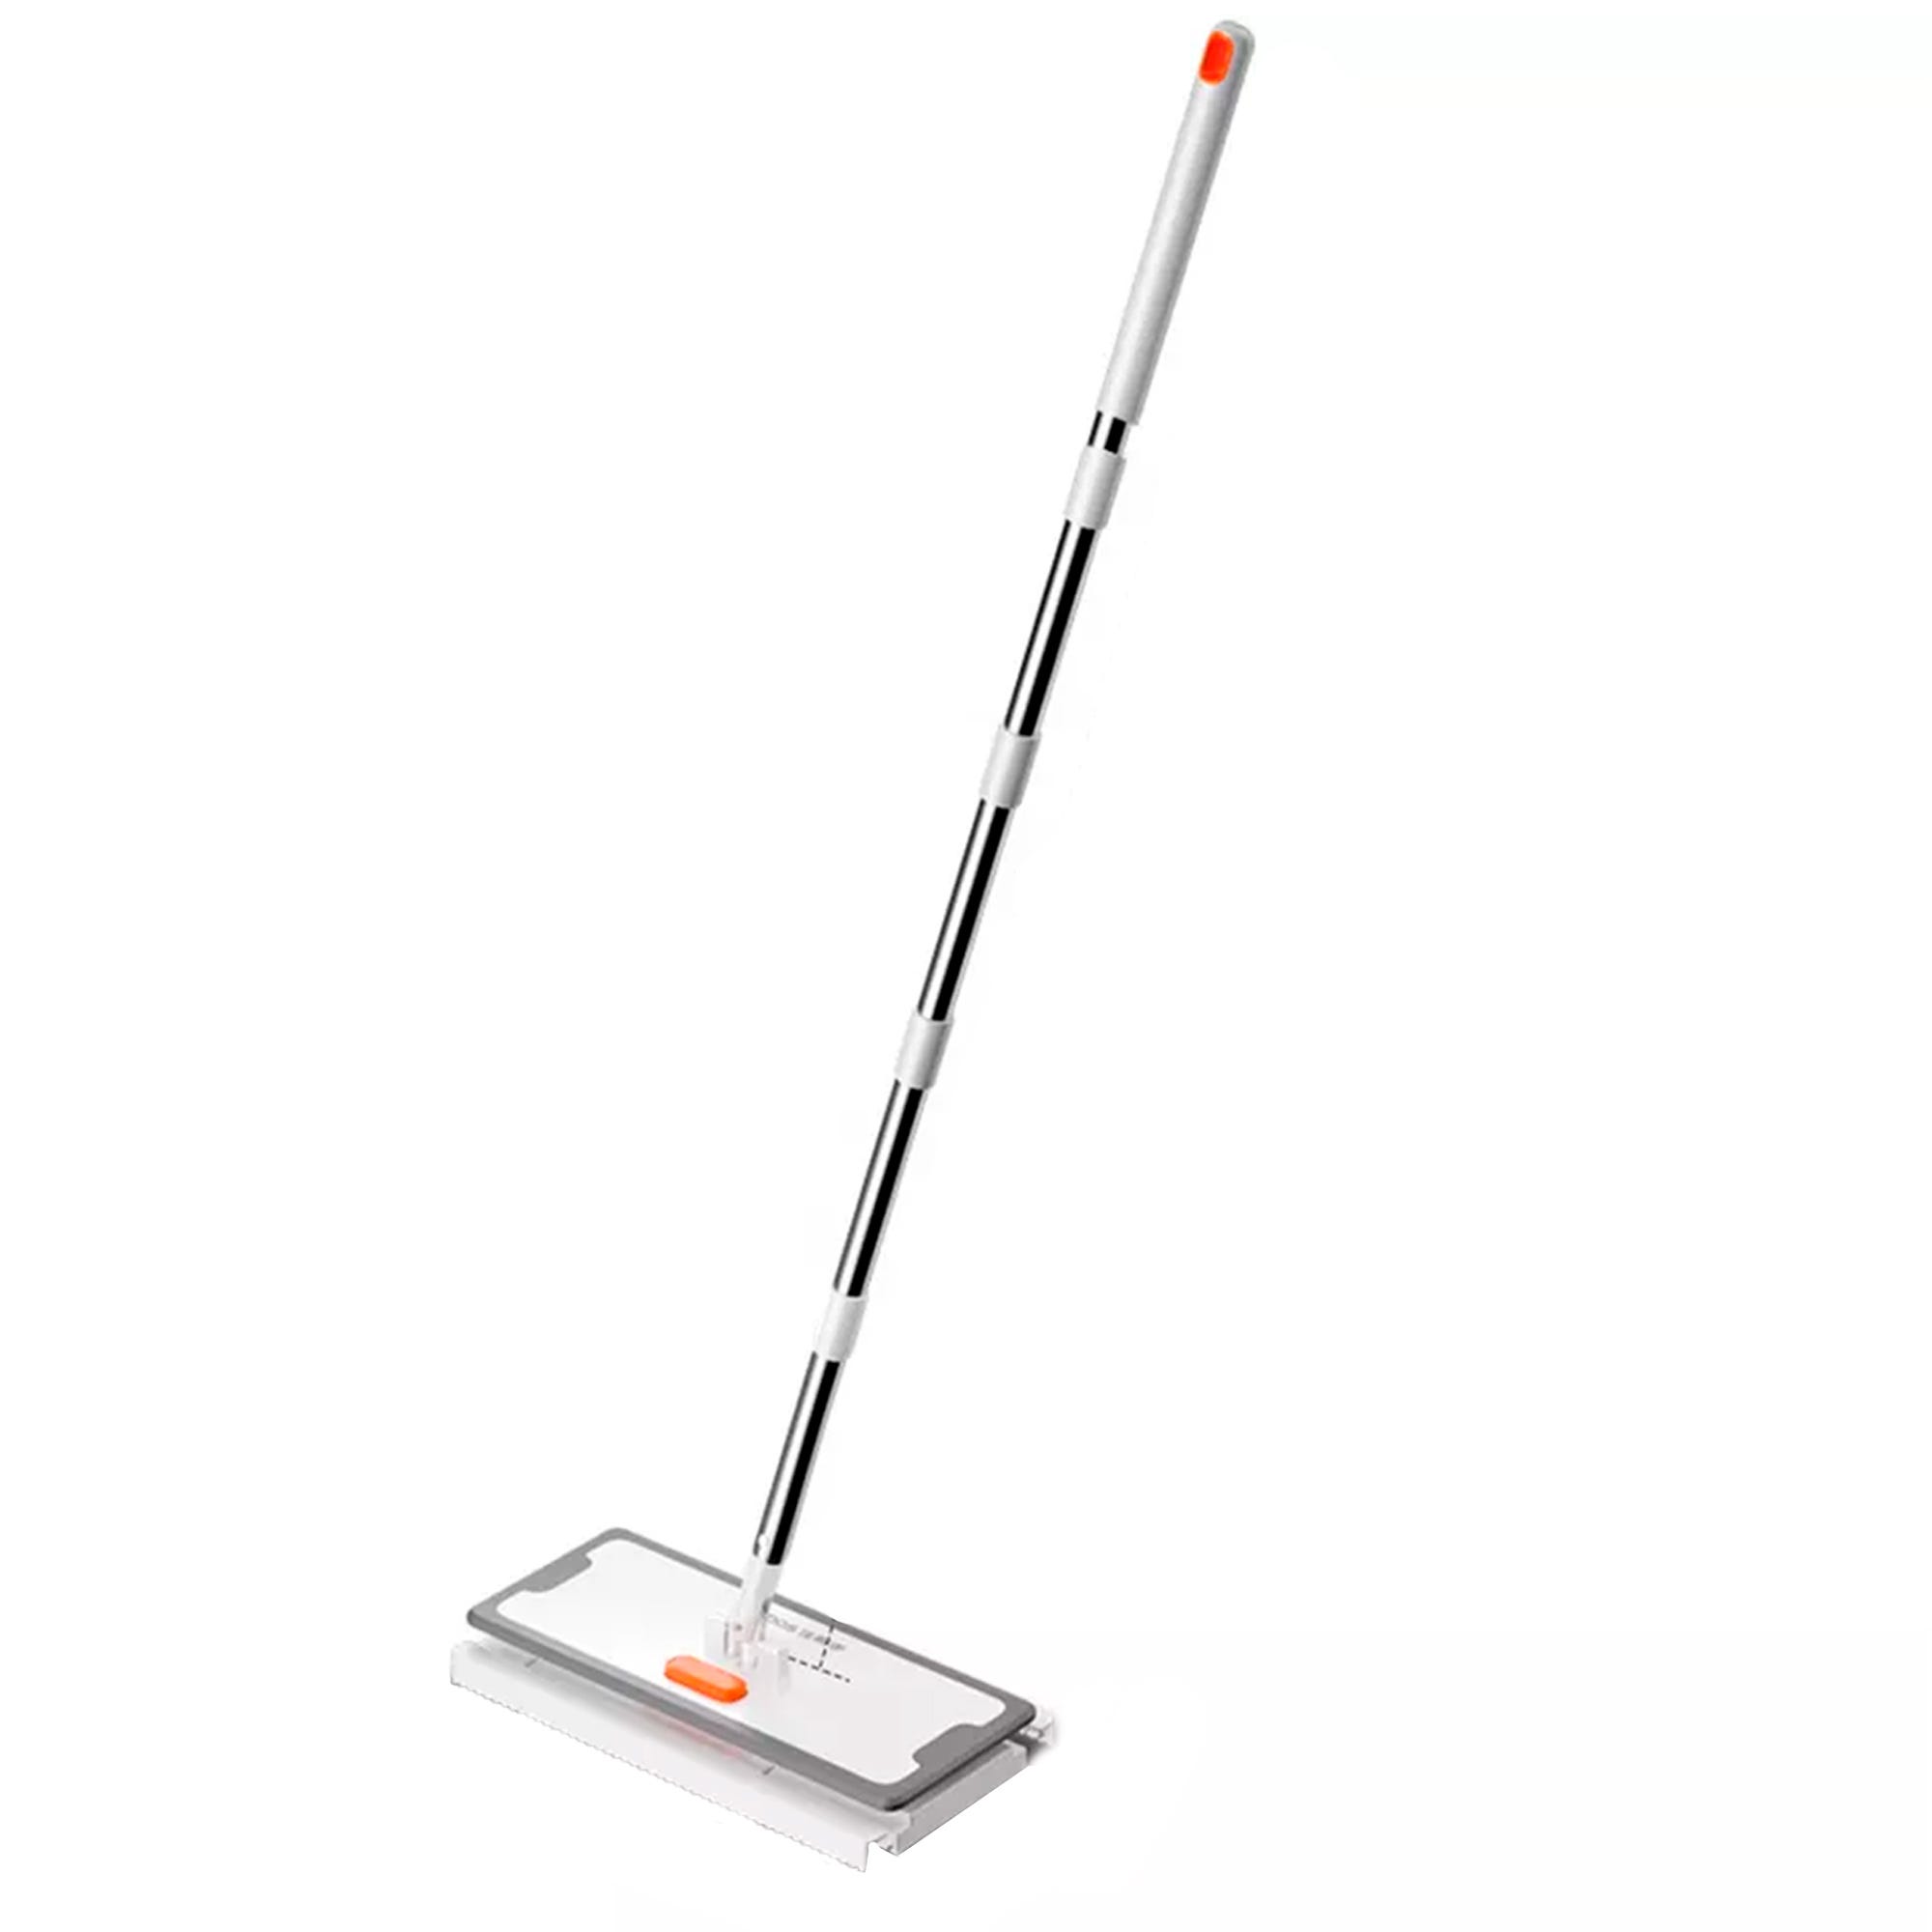 Scopa Flat mop per la pulizia di casa - Scope e ricambi Nitido Shop